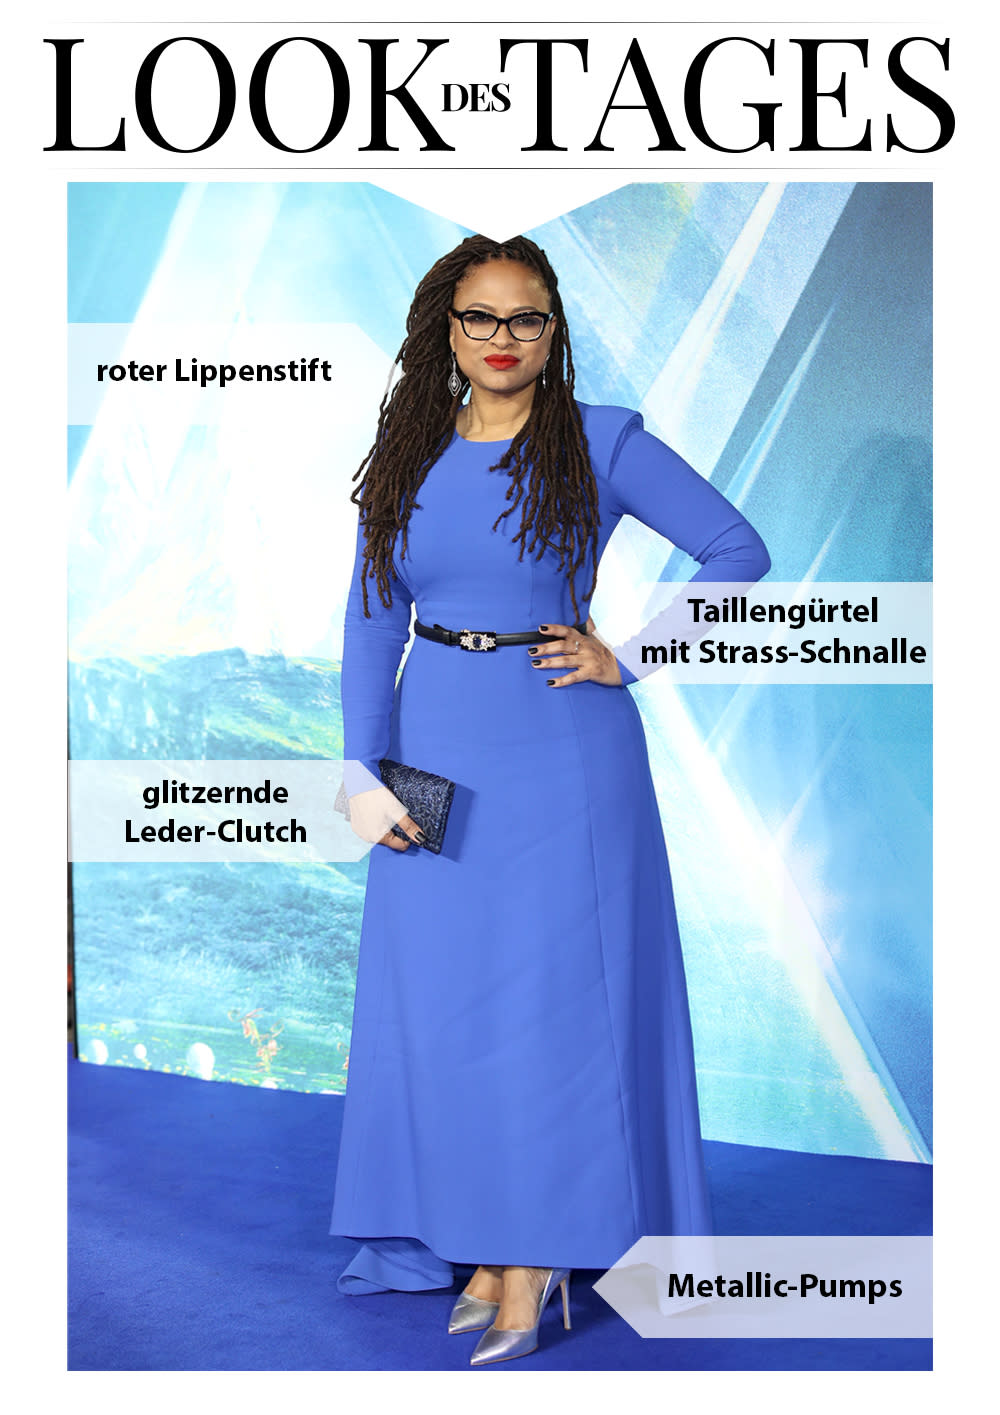 Bei der Premiere ihres neuen Films harmonierte das Kleid von Regisseurin Ava DuVernay perfekt mit dem blauen Teppich. (Bild: Getty Images)